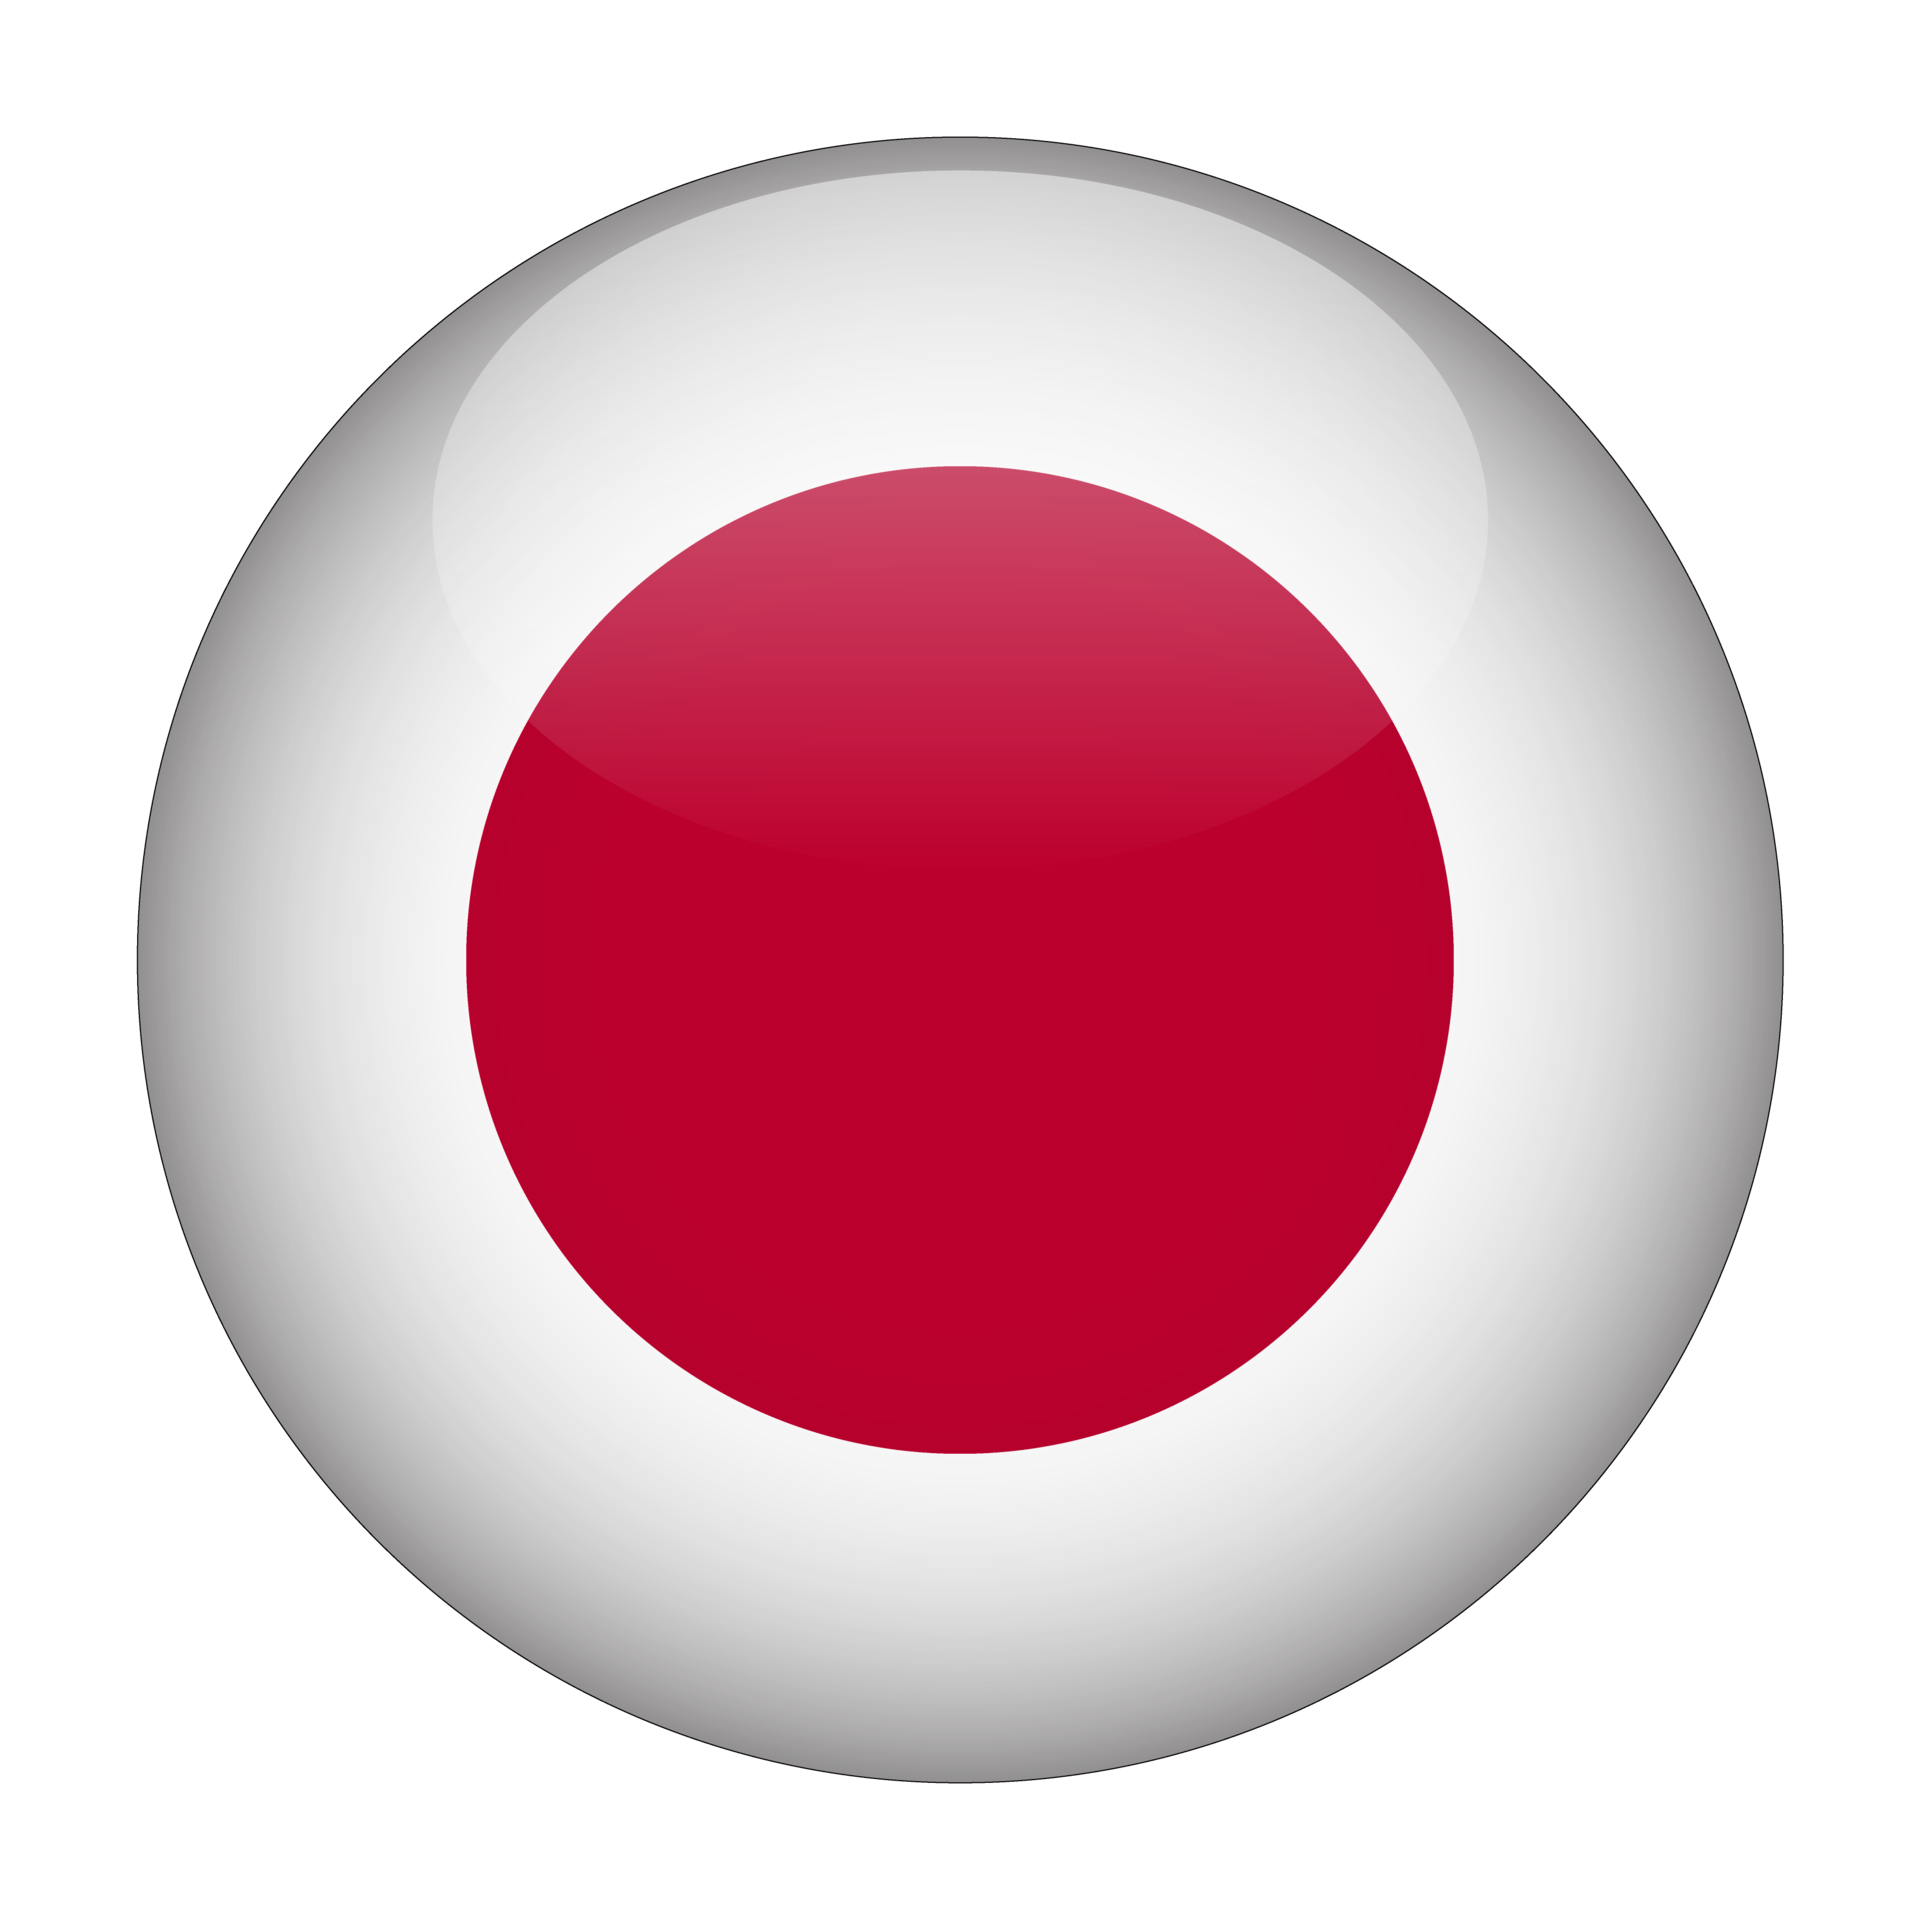 Đừng bỏ lỡ bức tranh 3D độc đáo của cờ Nhật Bản! Hãy tận hưởng thị giác đầy sắc màu và cảm nhận sự tinh tế của nghệ thuật.